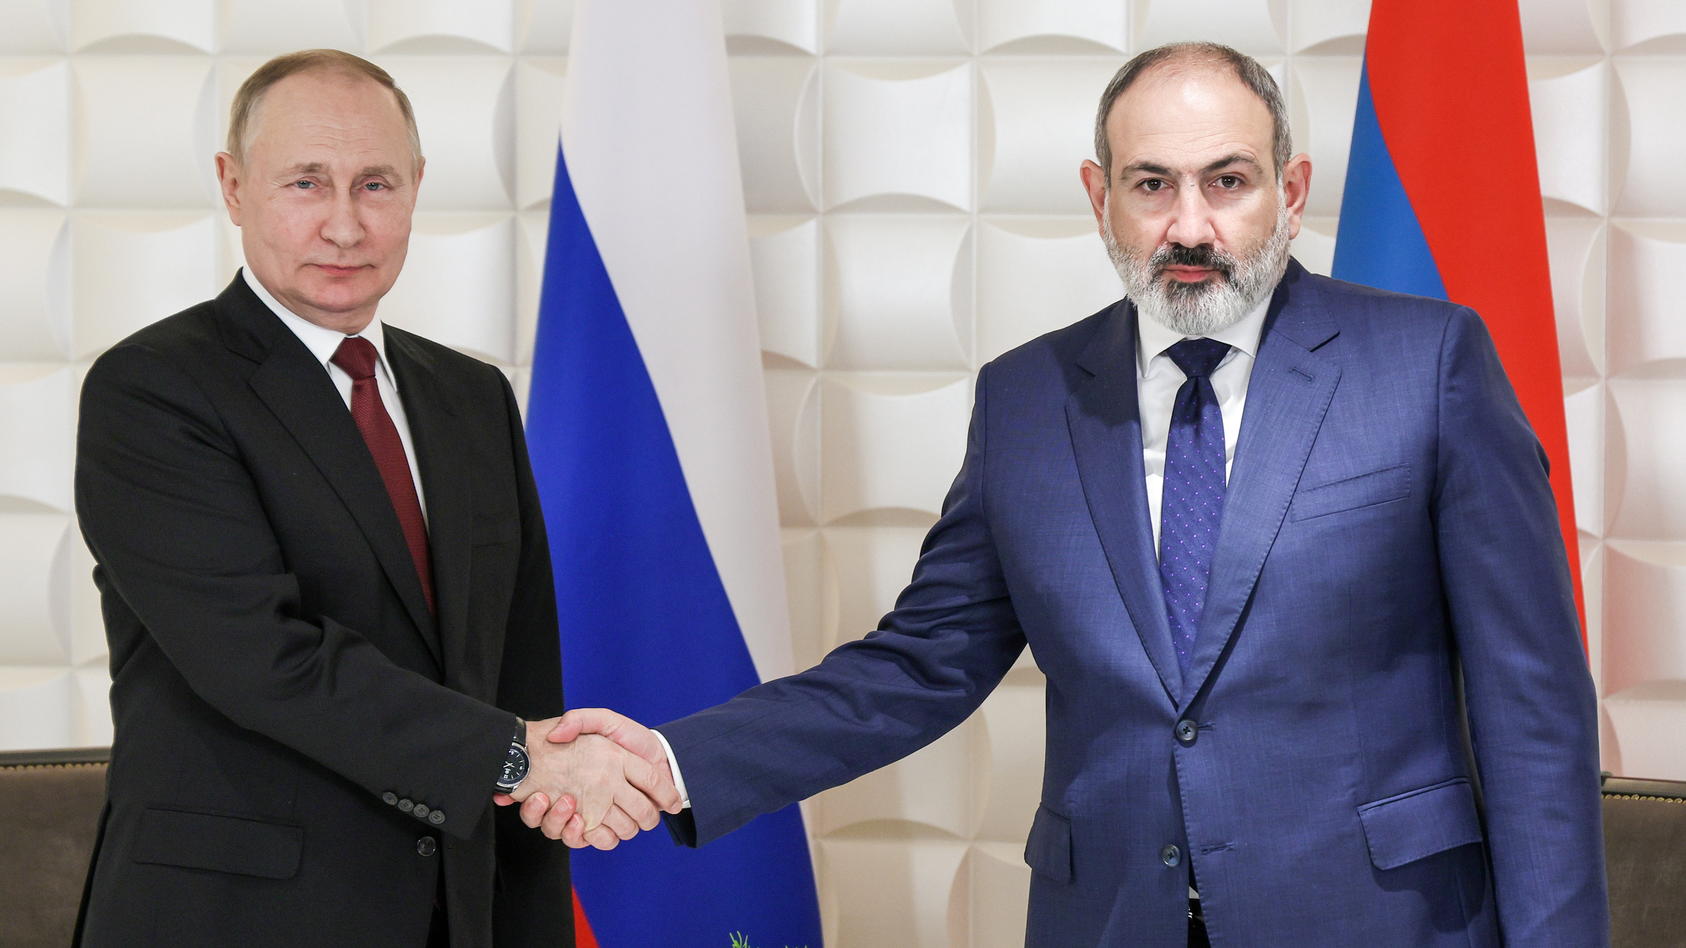 prasident-putin-und-der-armenische-premierminister-pashinyan-treffen-sich-in-eriwan-doch-der-empfang-ist-frostig